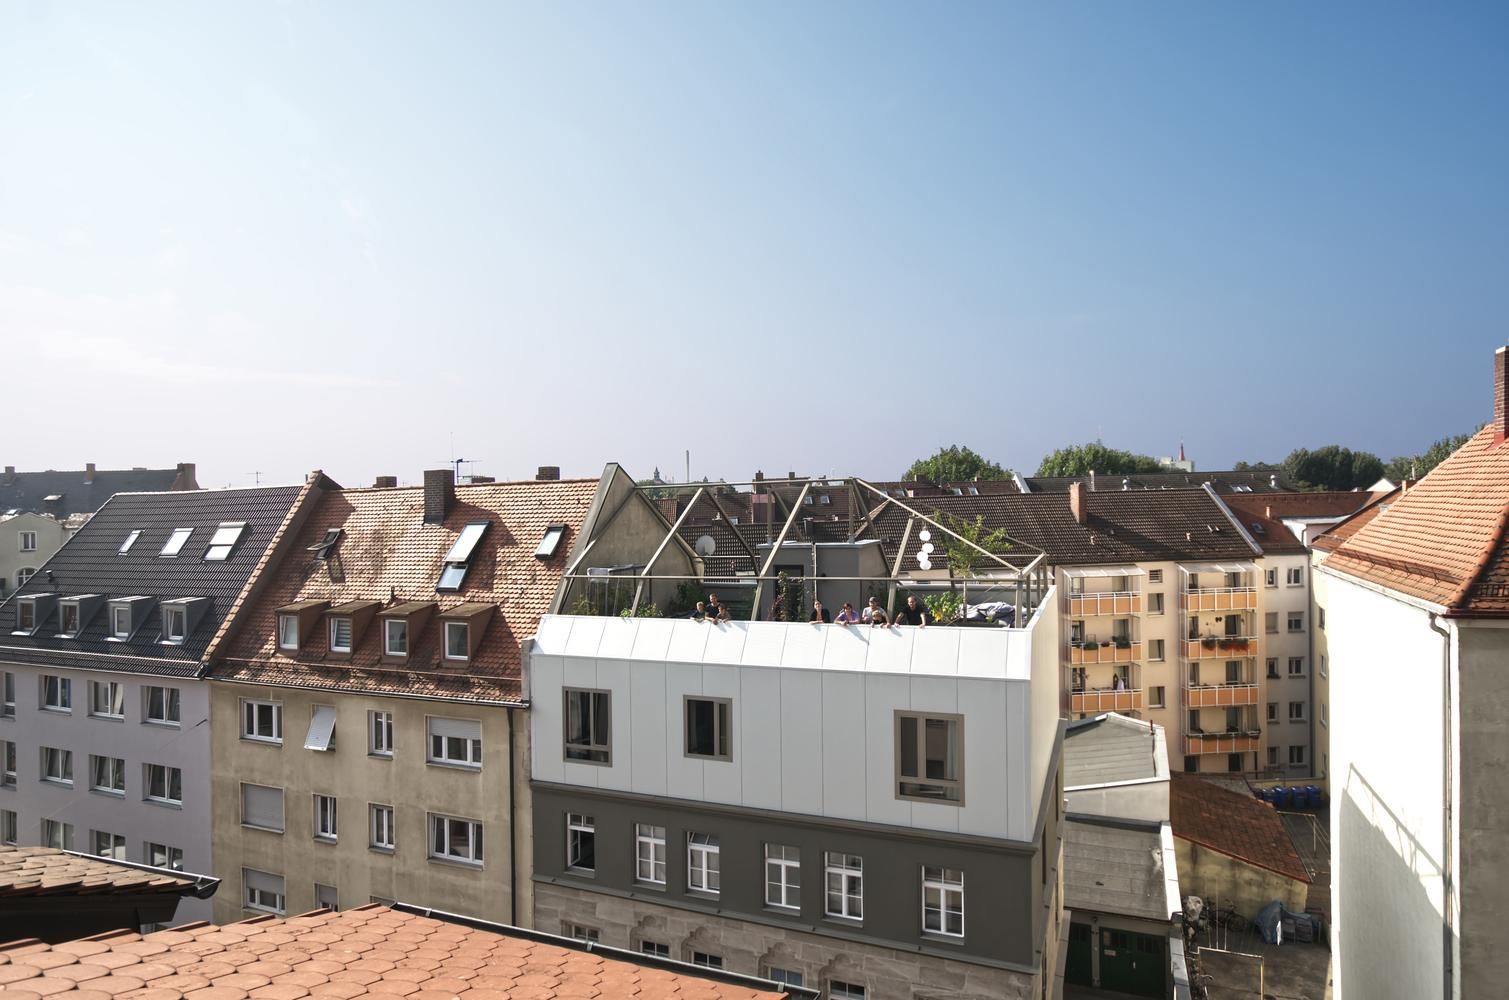 Сад на крыше: как добавить уюта и гостеприимства многоквартирным домам 